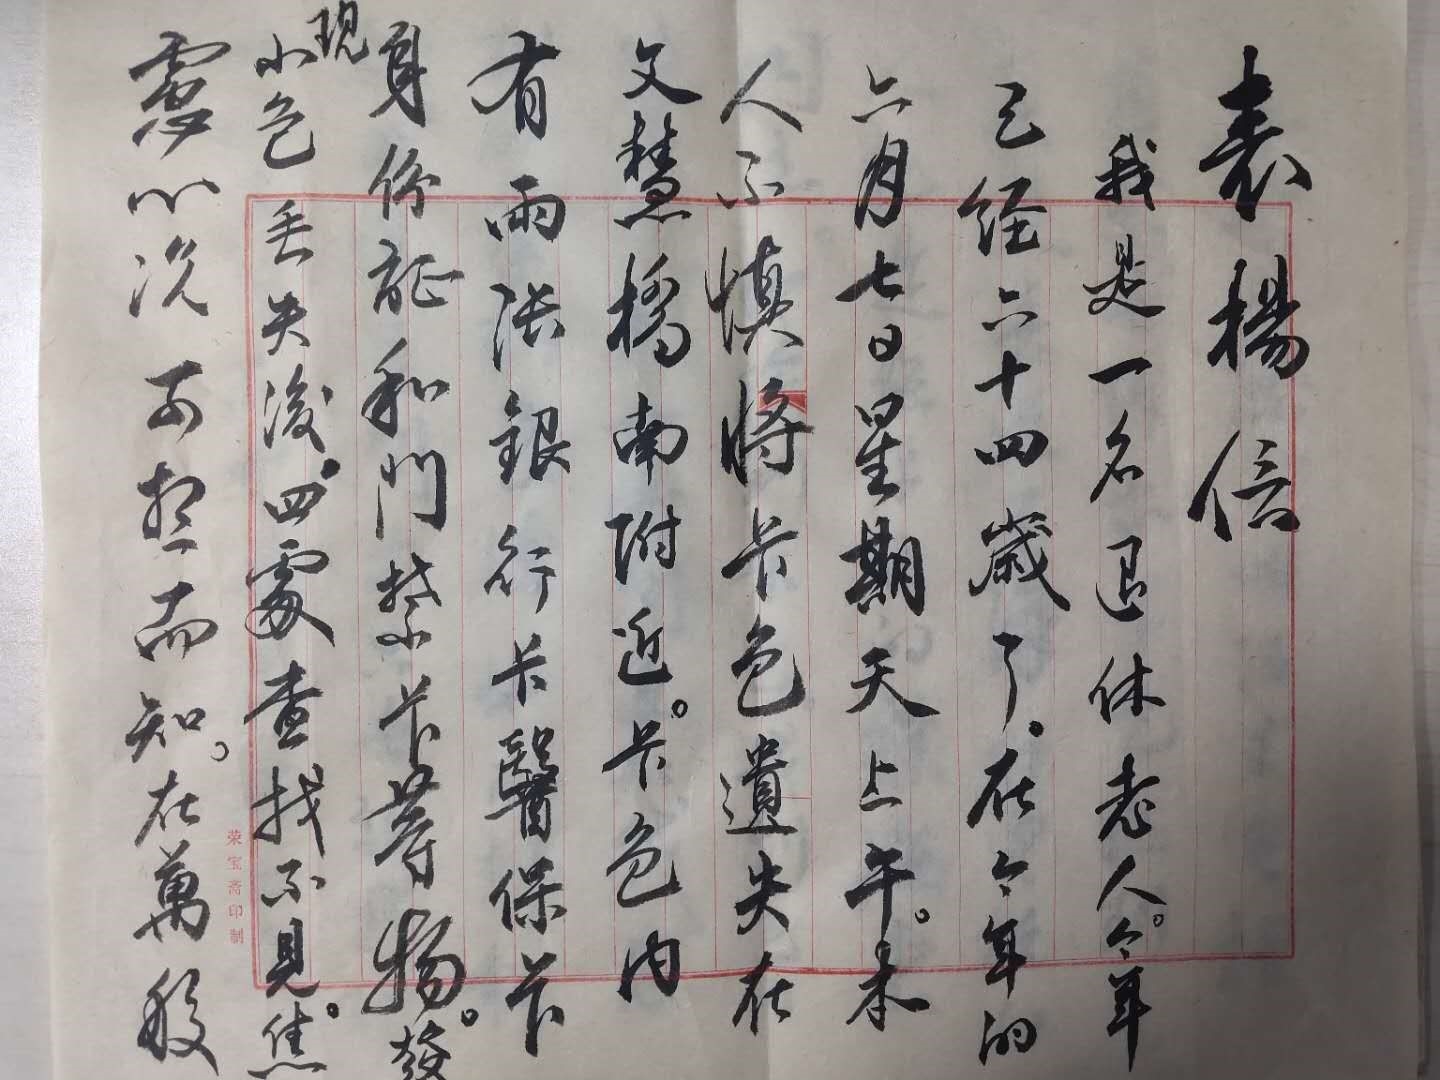 中国节能收到一封失主手写的感谢信